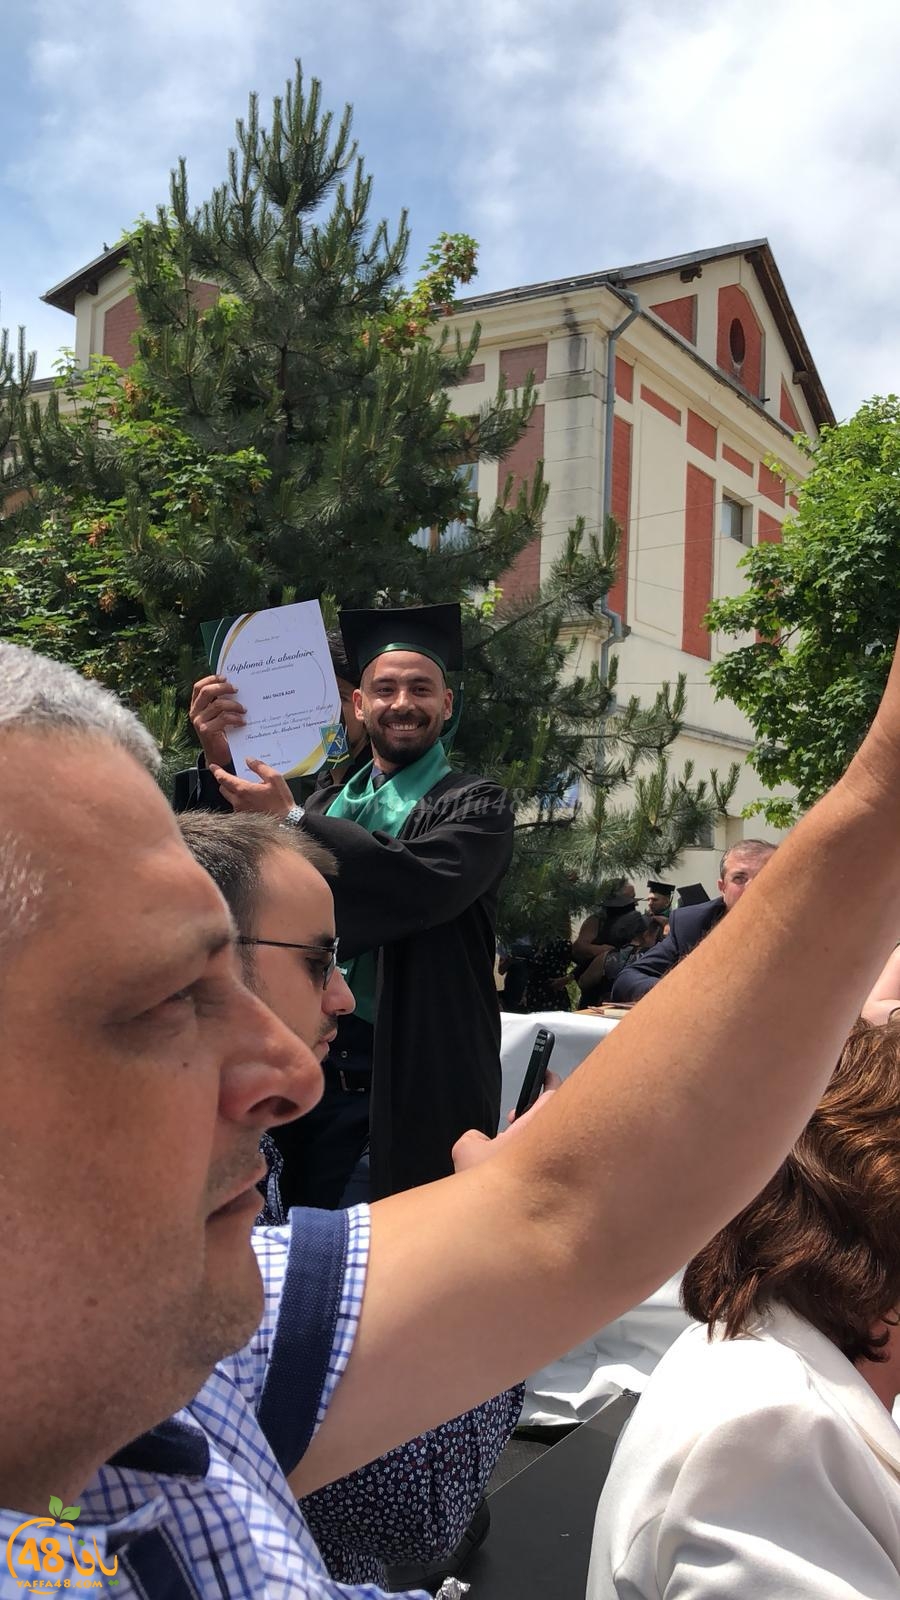   مبروك - تخرّج الطبيب عزات رمزي أبو طالب من جامعة بوخاريست في رومانيا 